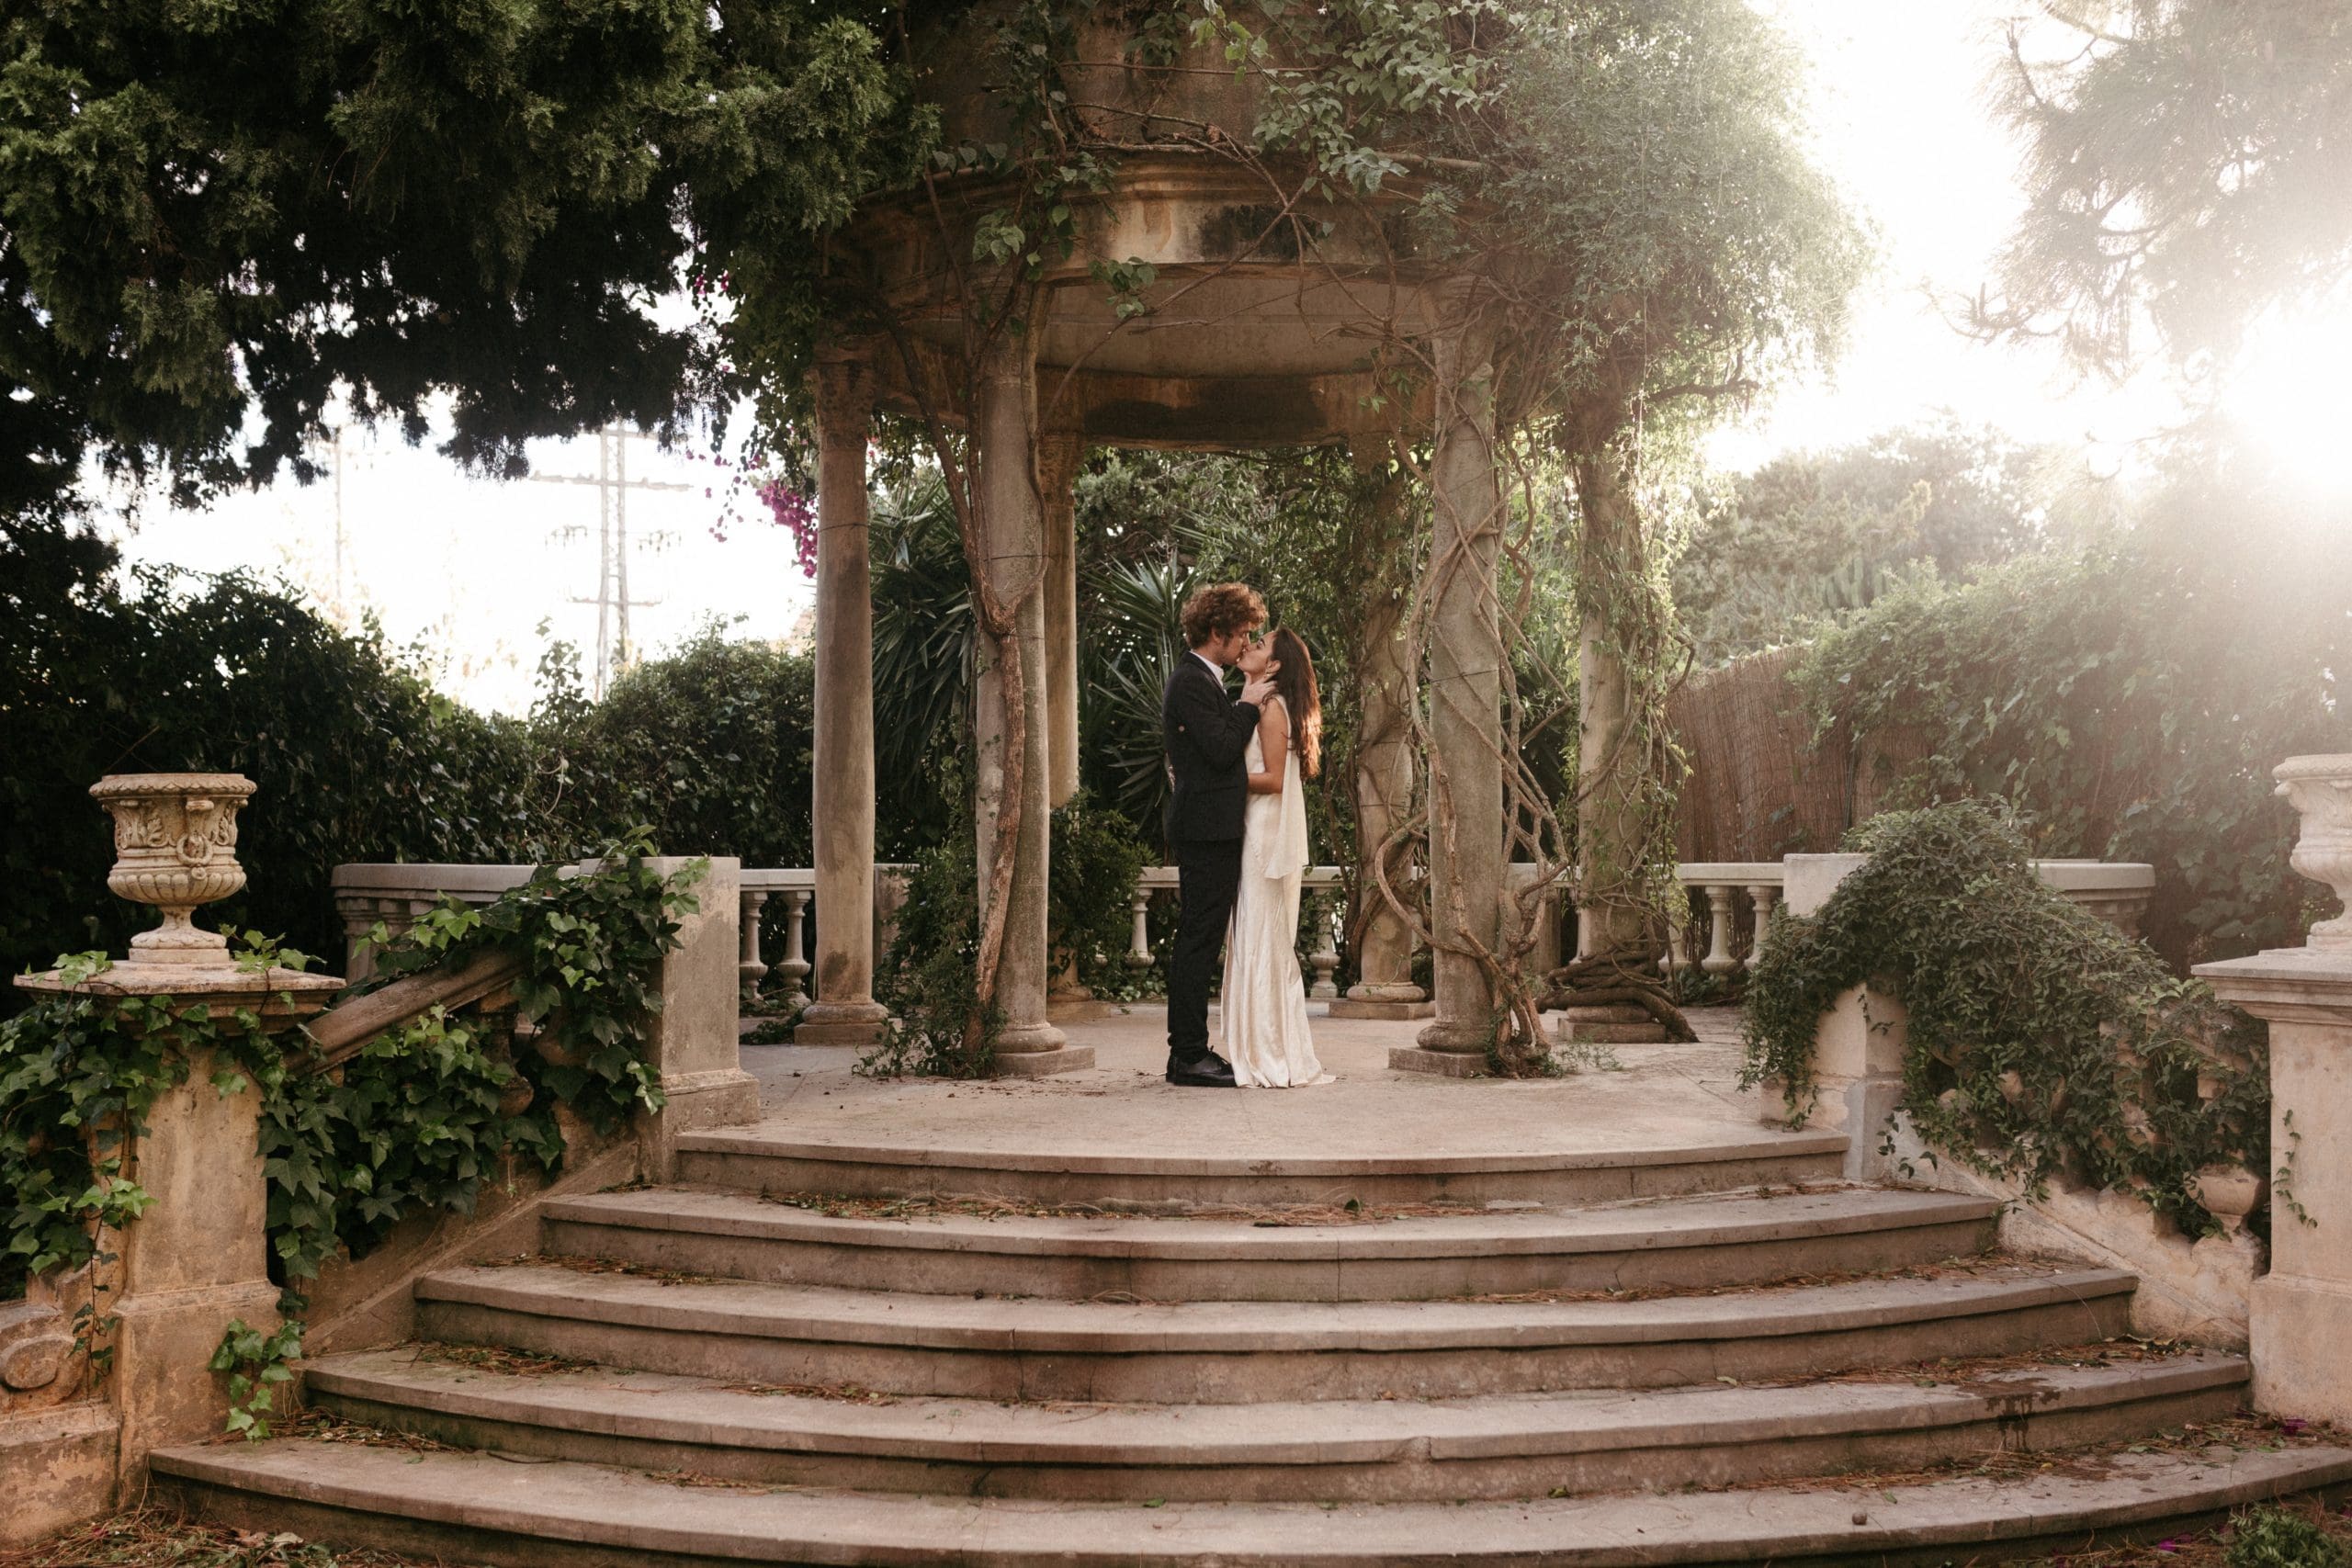 Un momento mágico en Casa Santonja: pareja de novios sellando su amor con un apasionado beso en el altar